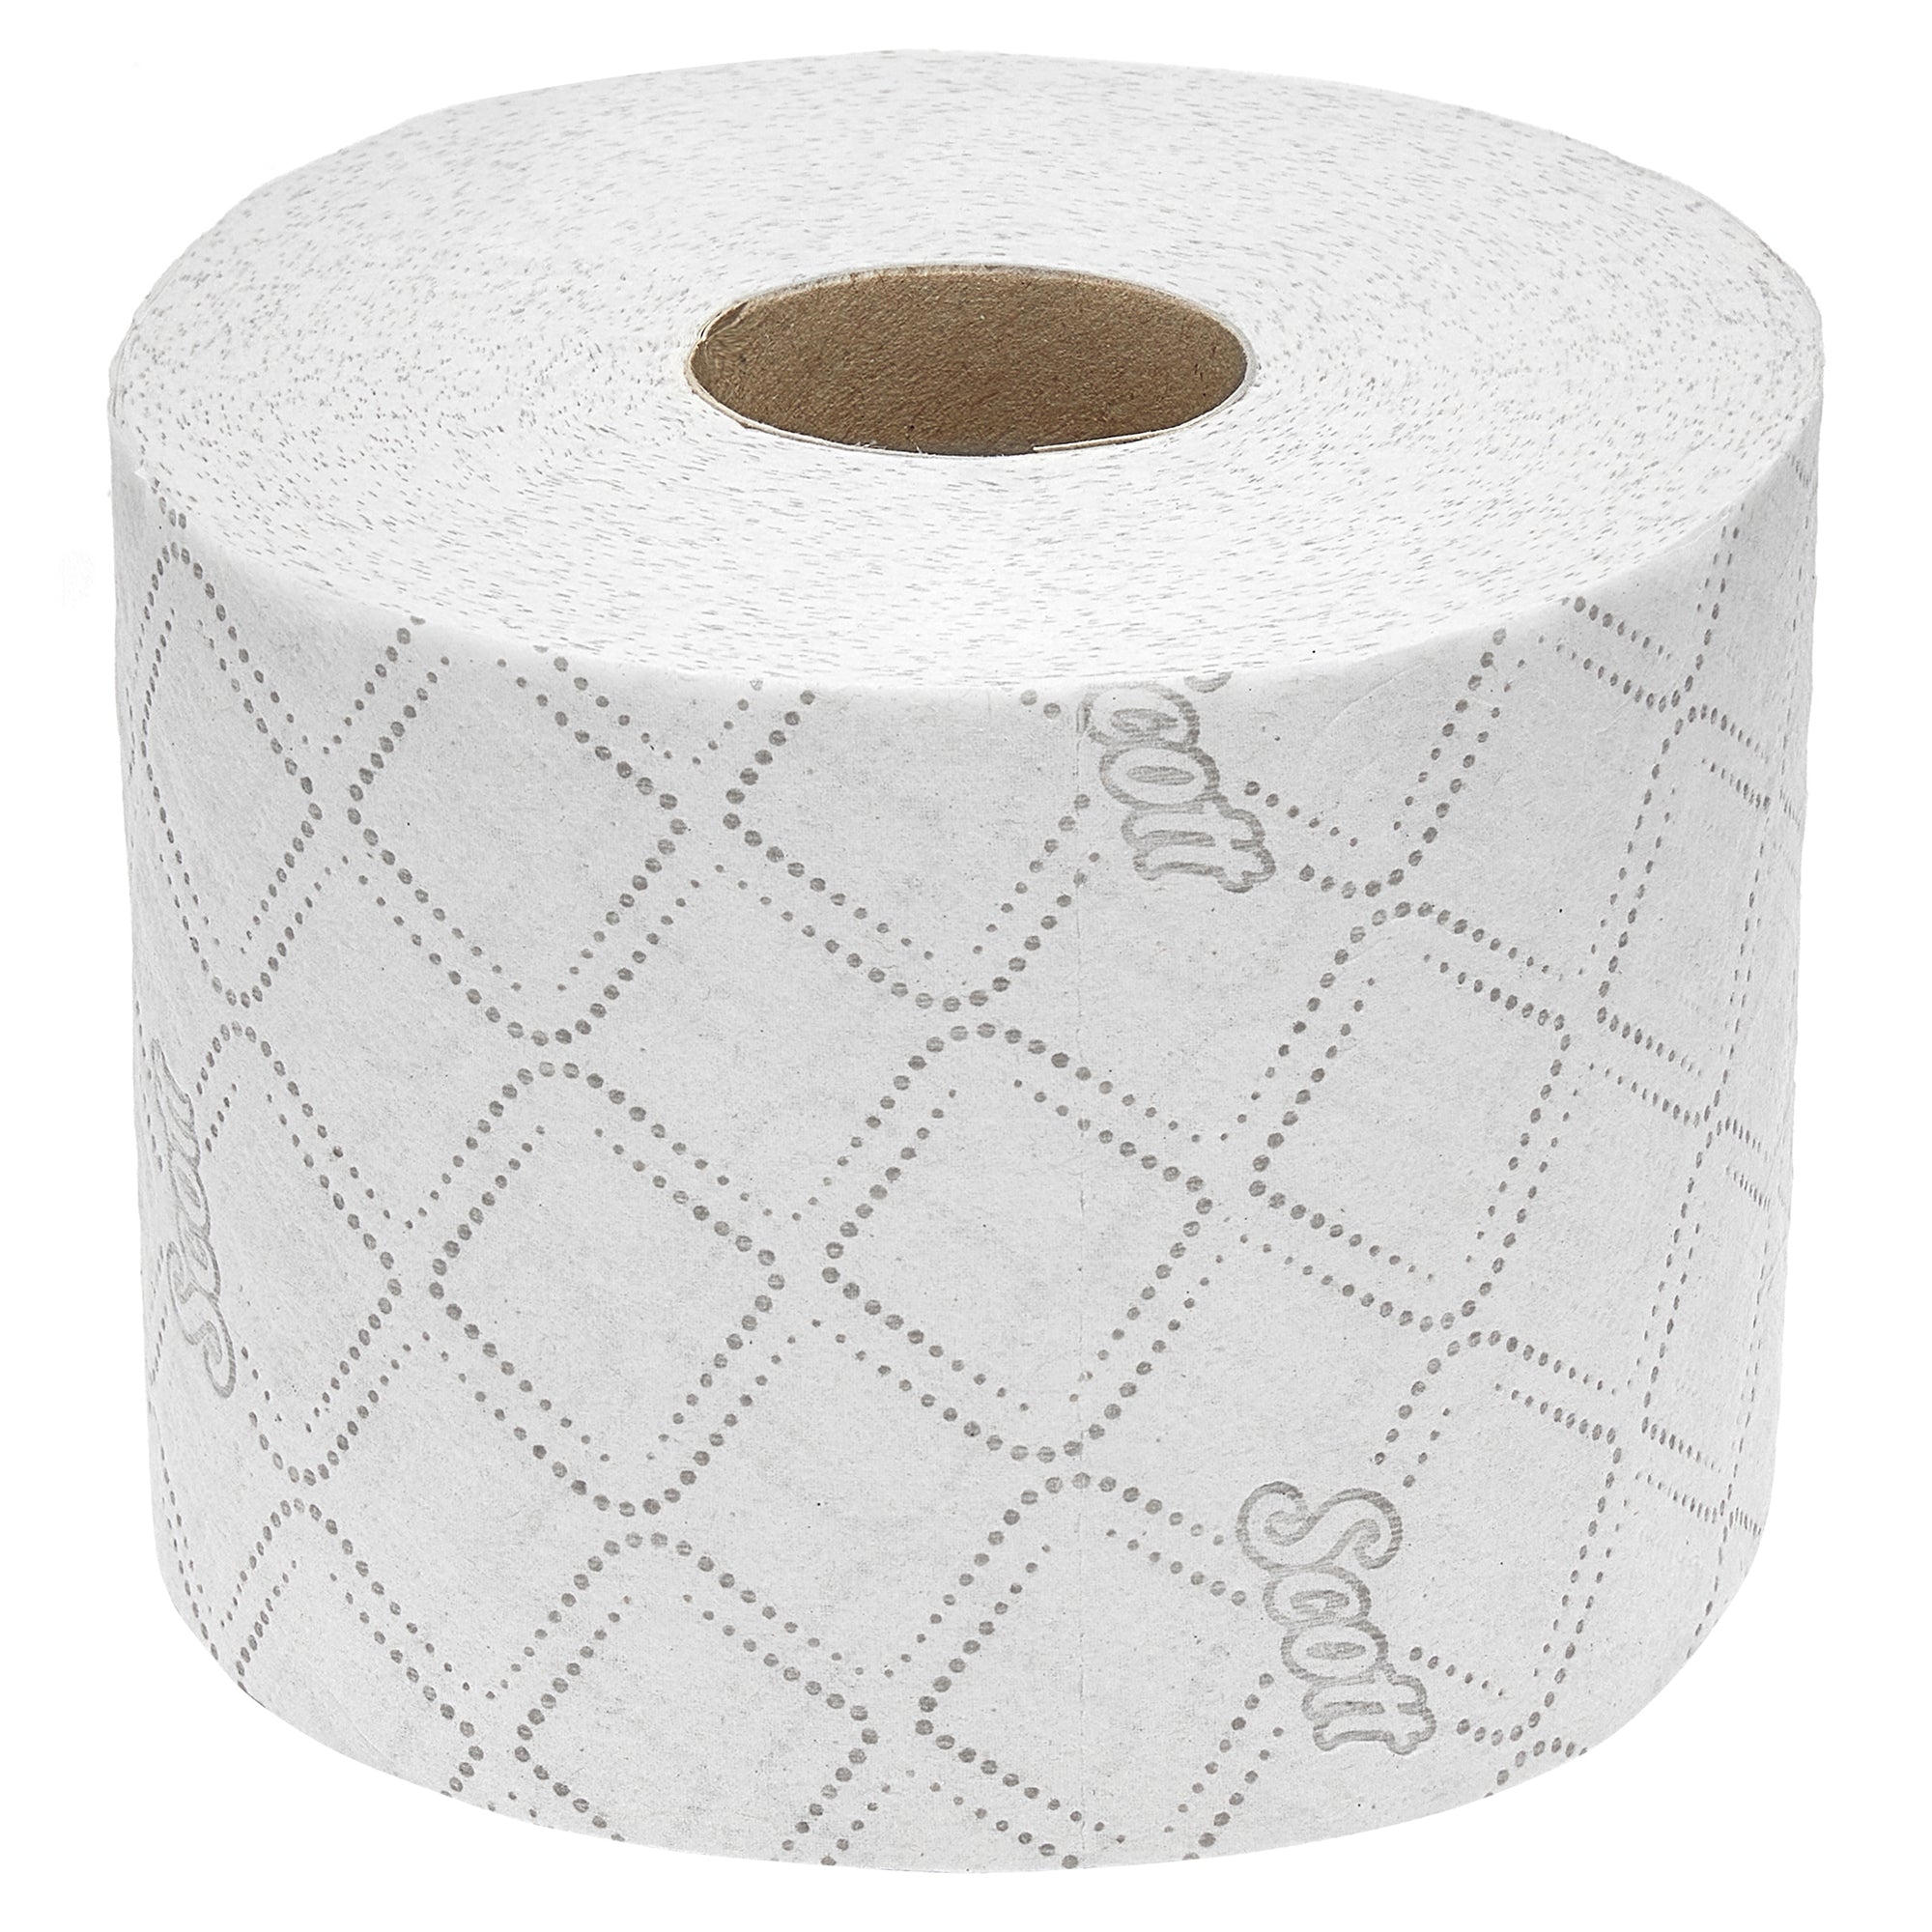 Scott® Control™ Standard-Toilettenpapierrollen 8518 – 36 Rollen mit je 350 weißen, 3-lagigen Blättern (12.600 Blätter)